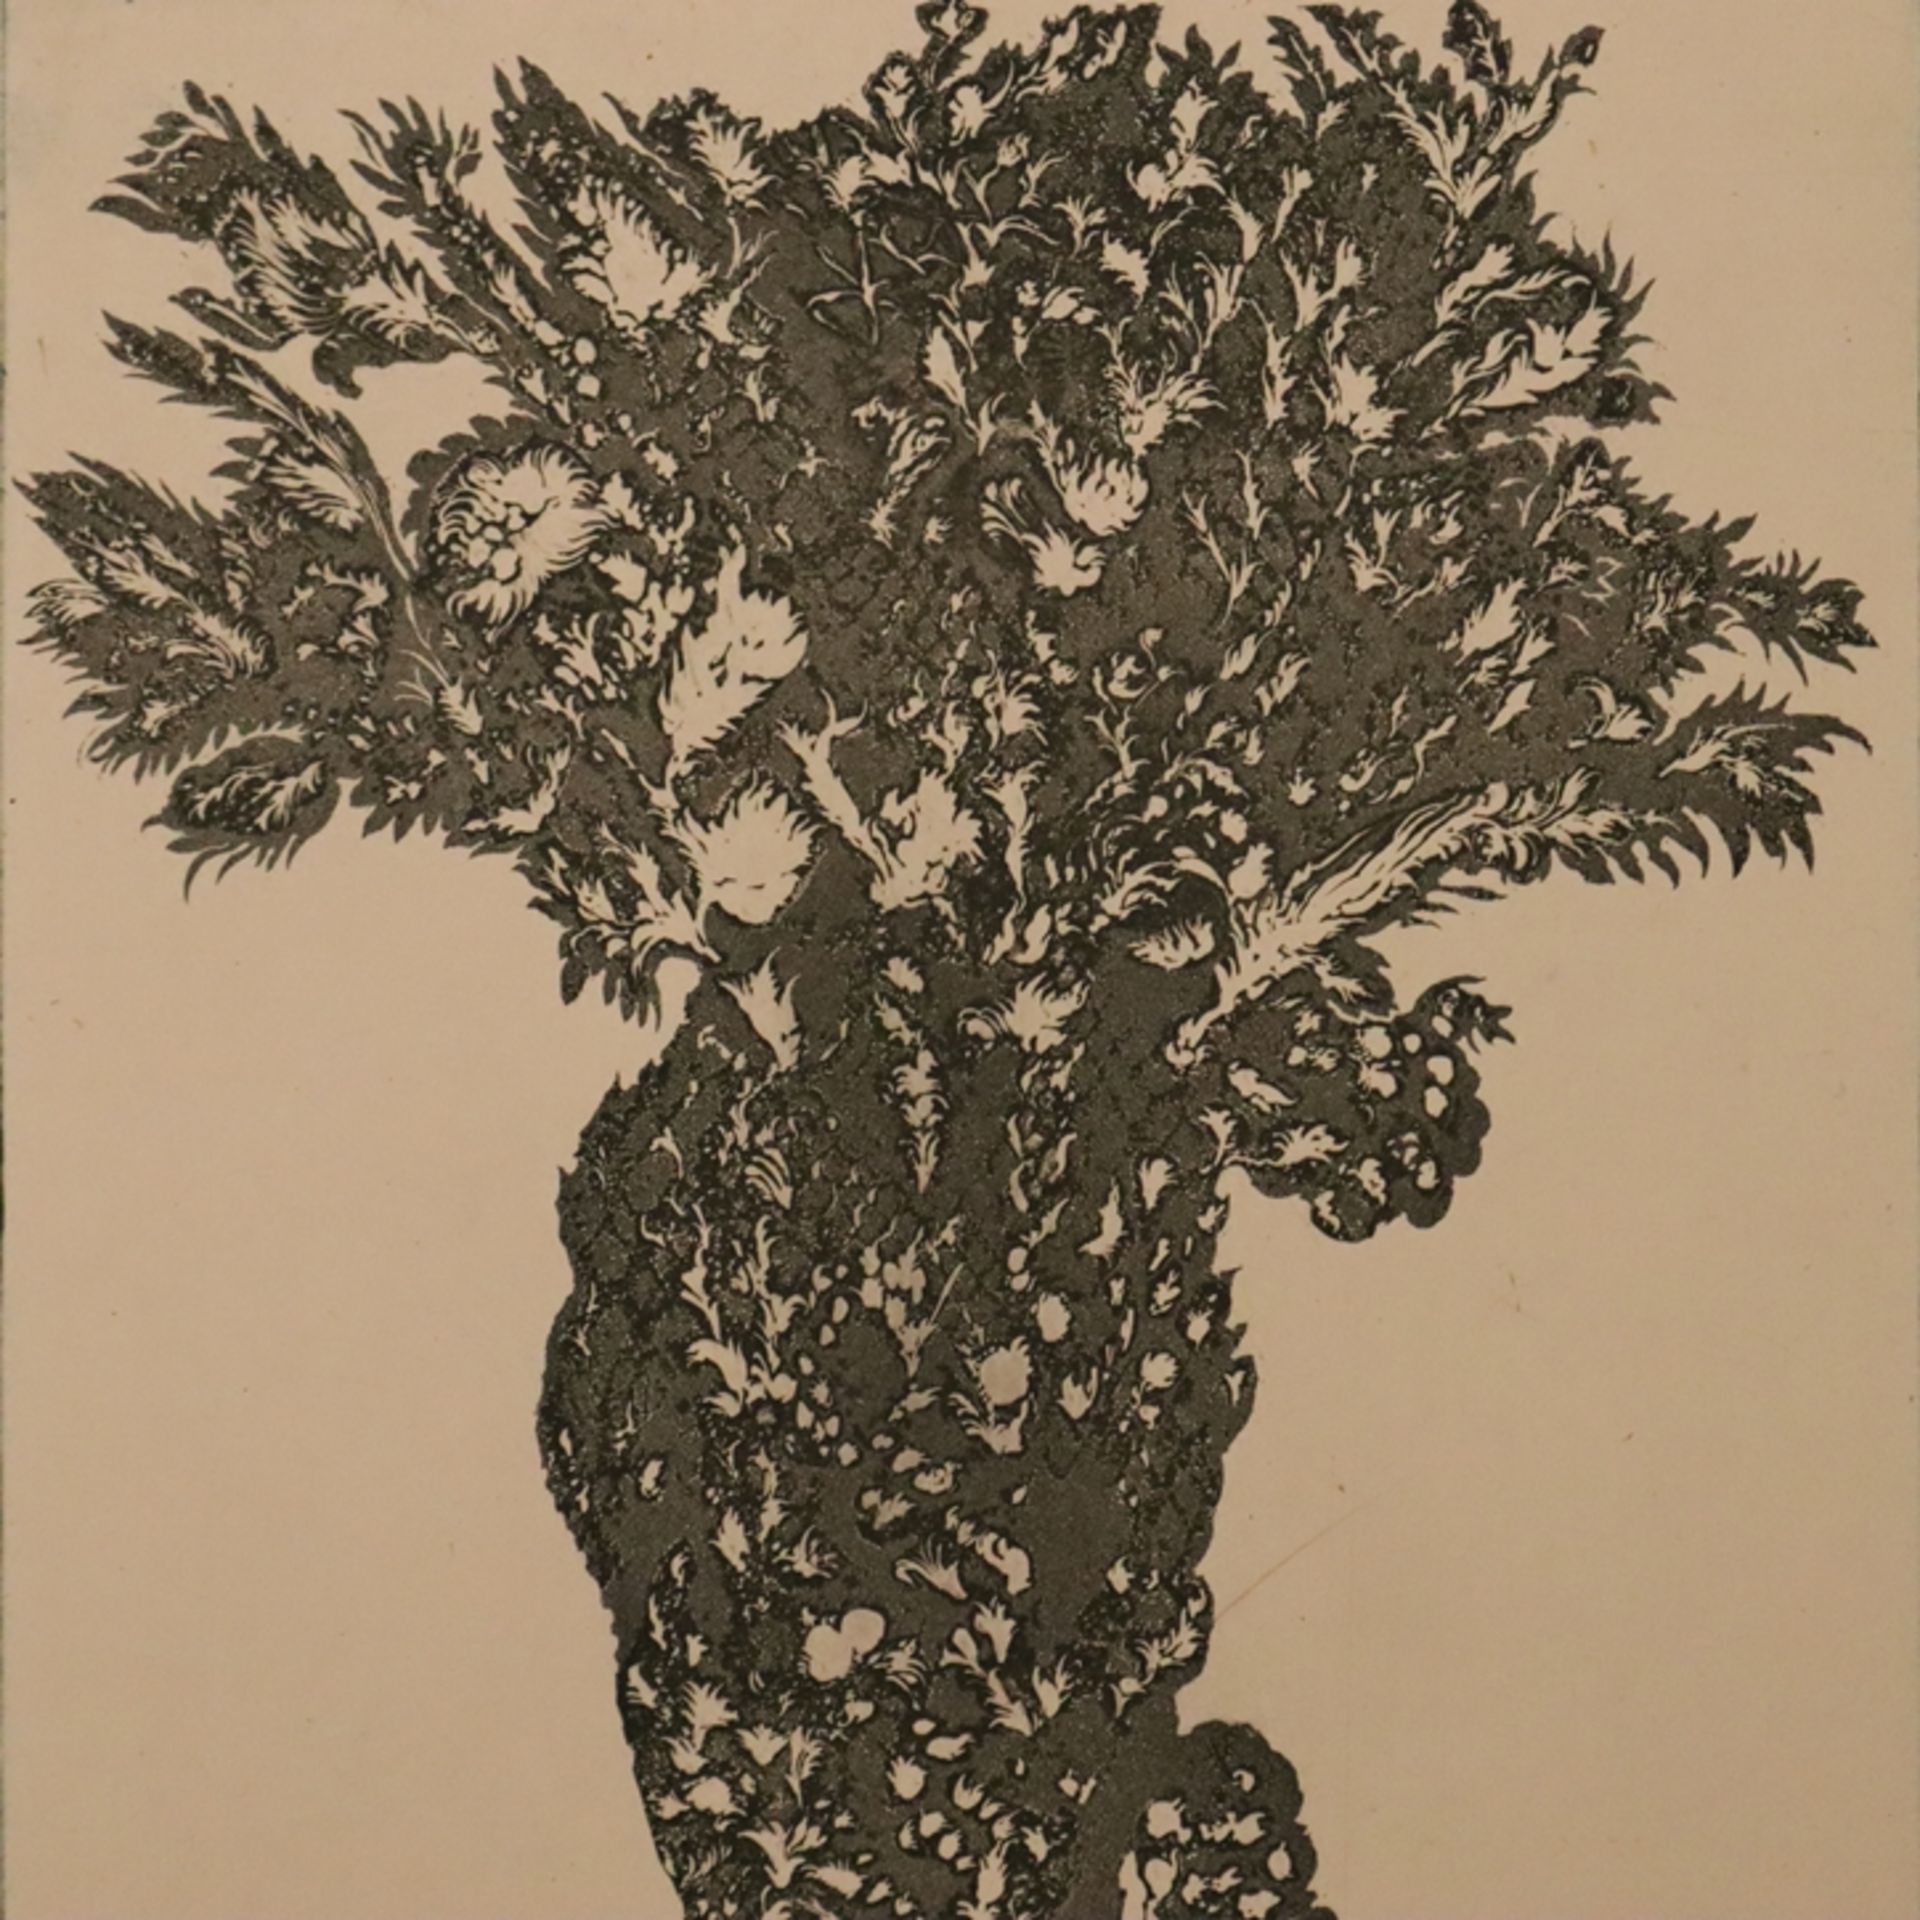 Fuchs, Ernst (1930-Wien-2015) - "Lilith Hinter dem Baum der Erkenntnis", 1975, Radierung auf Papier - Image 3 of 4